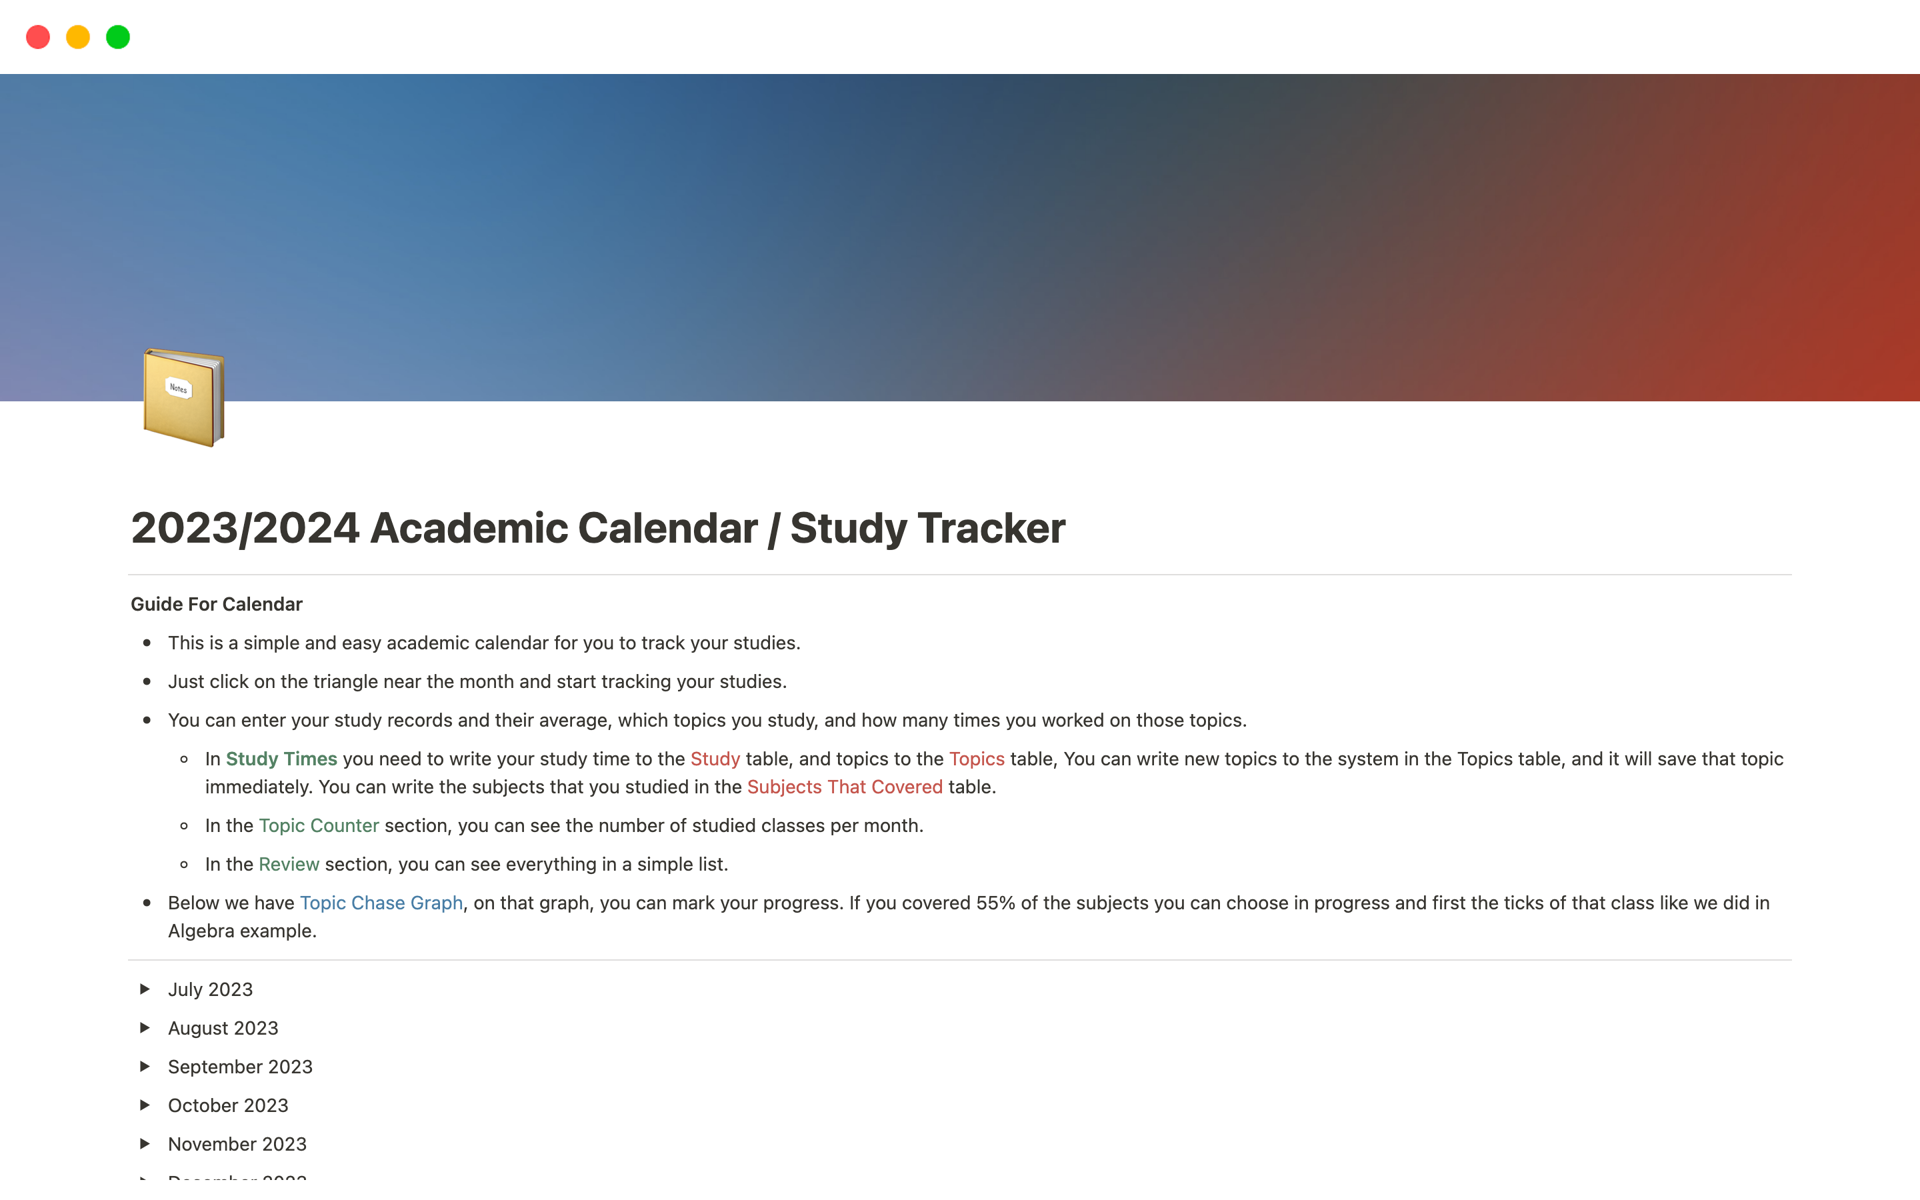 Uma prévia do modelo para 2023/2024 Academic Calendar / Study Tracker